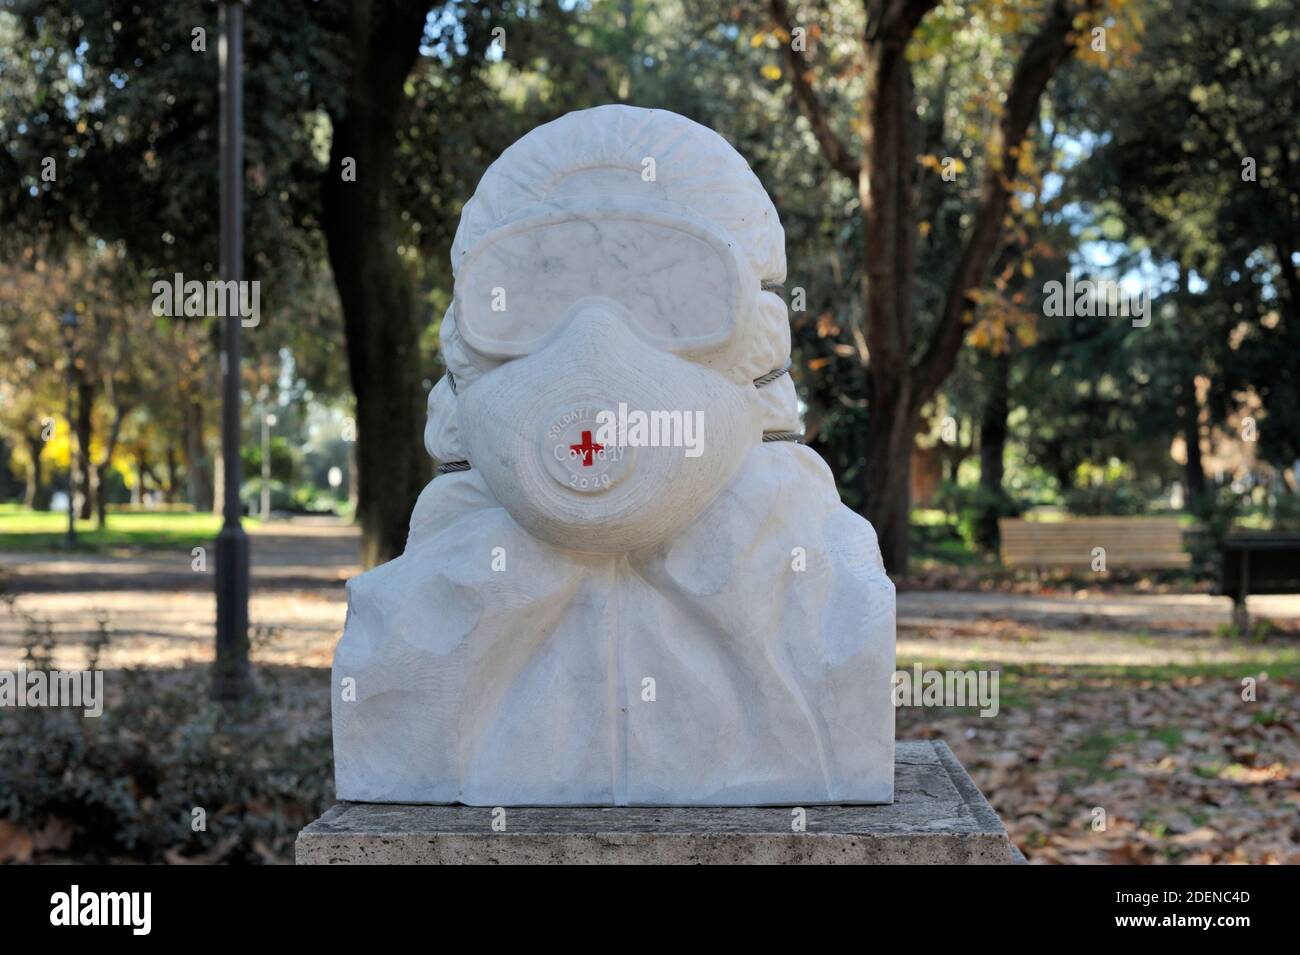 Italie, Rome, Pincio, buste en marbre avec masque dédié aux ouvriers de covid 19 Banque D'Images